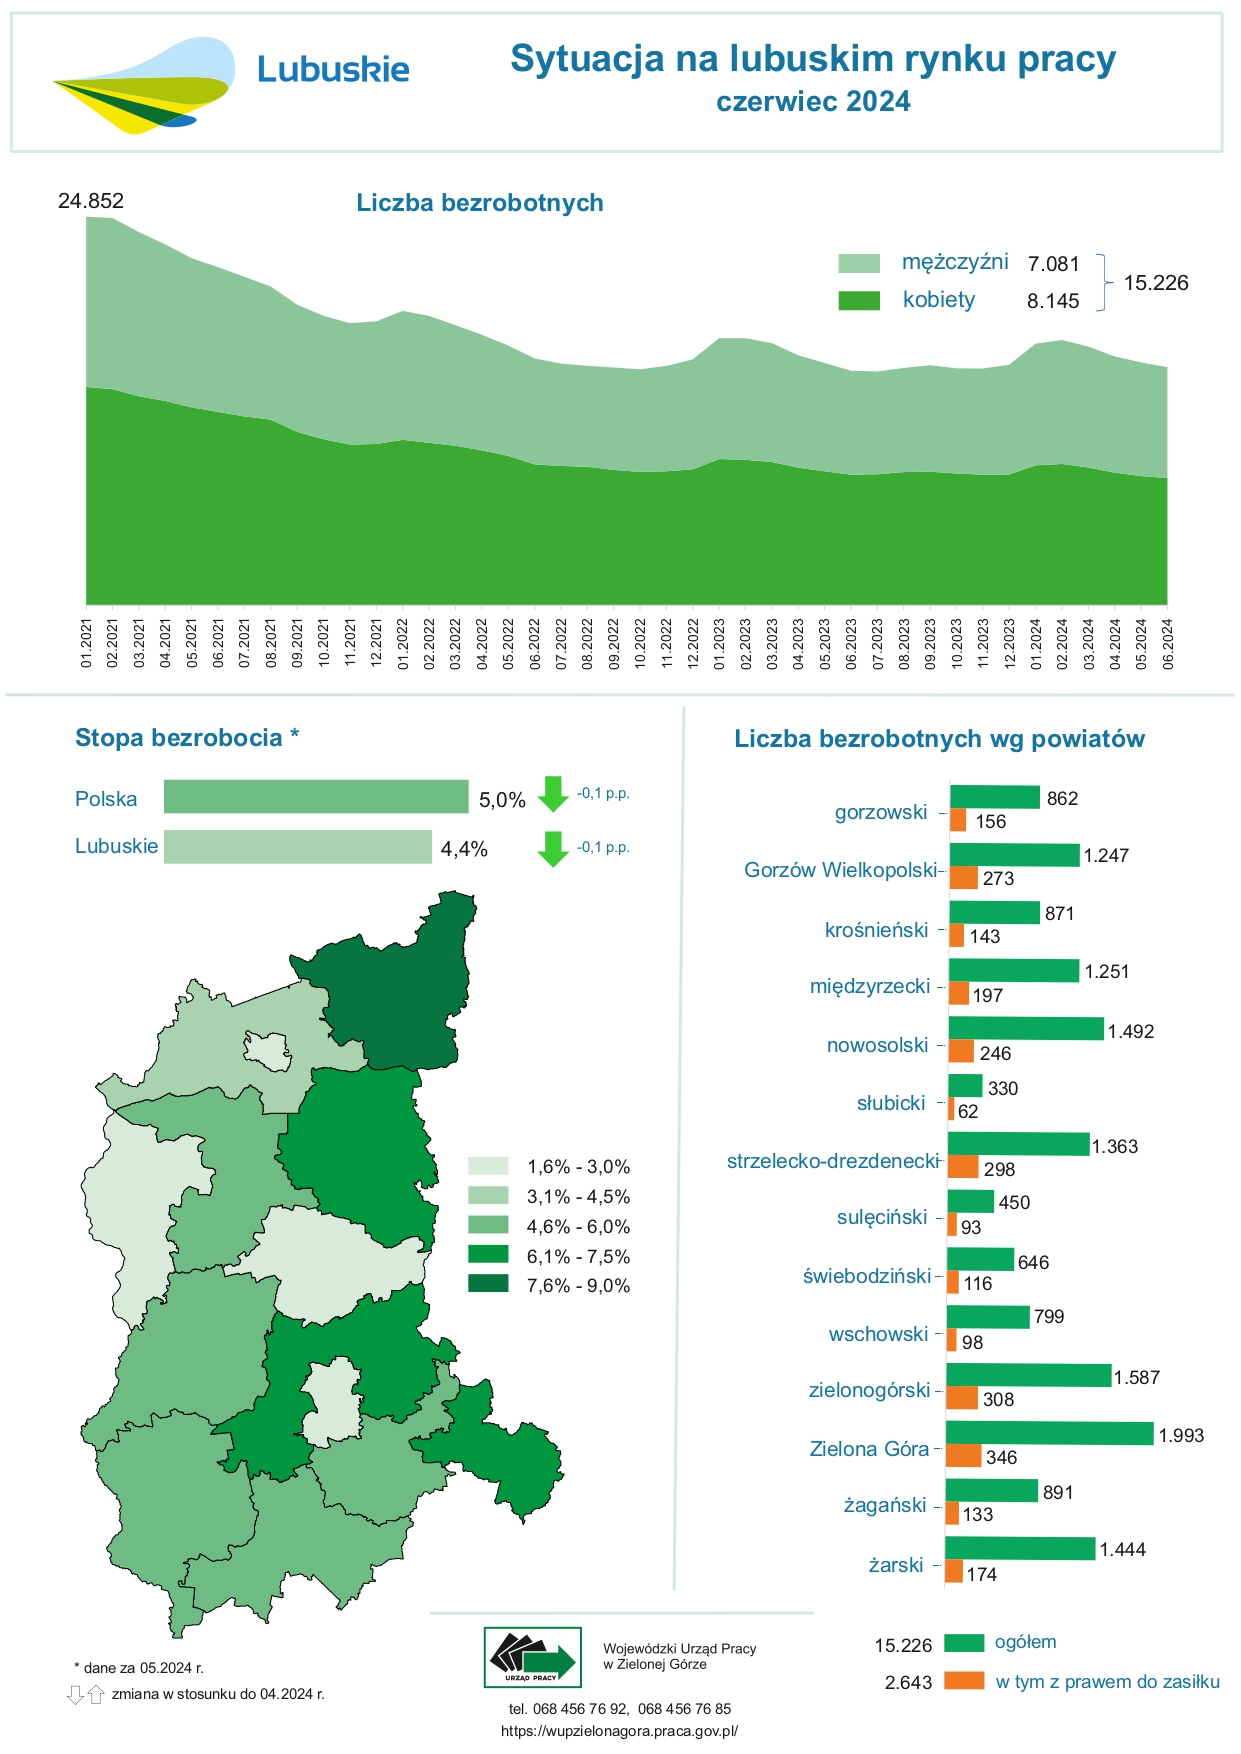 slider.alt.head Sytuacja na lubuskim rynku pracy - infografika - czerwiec 2024